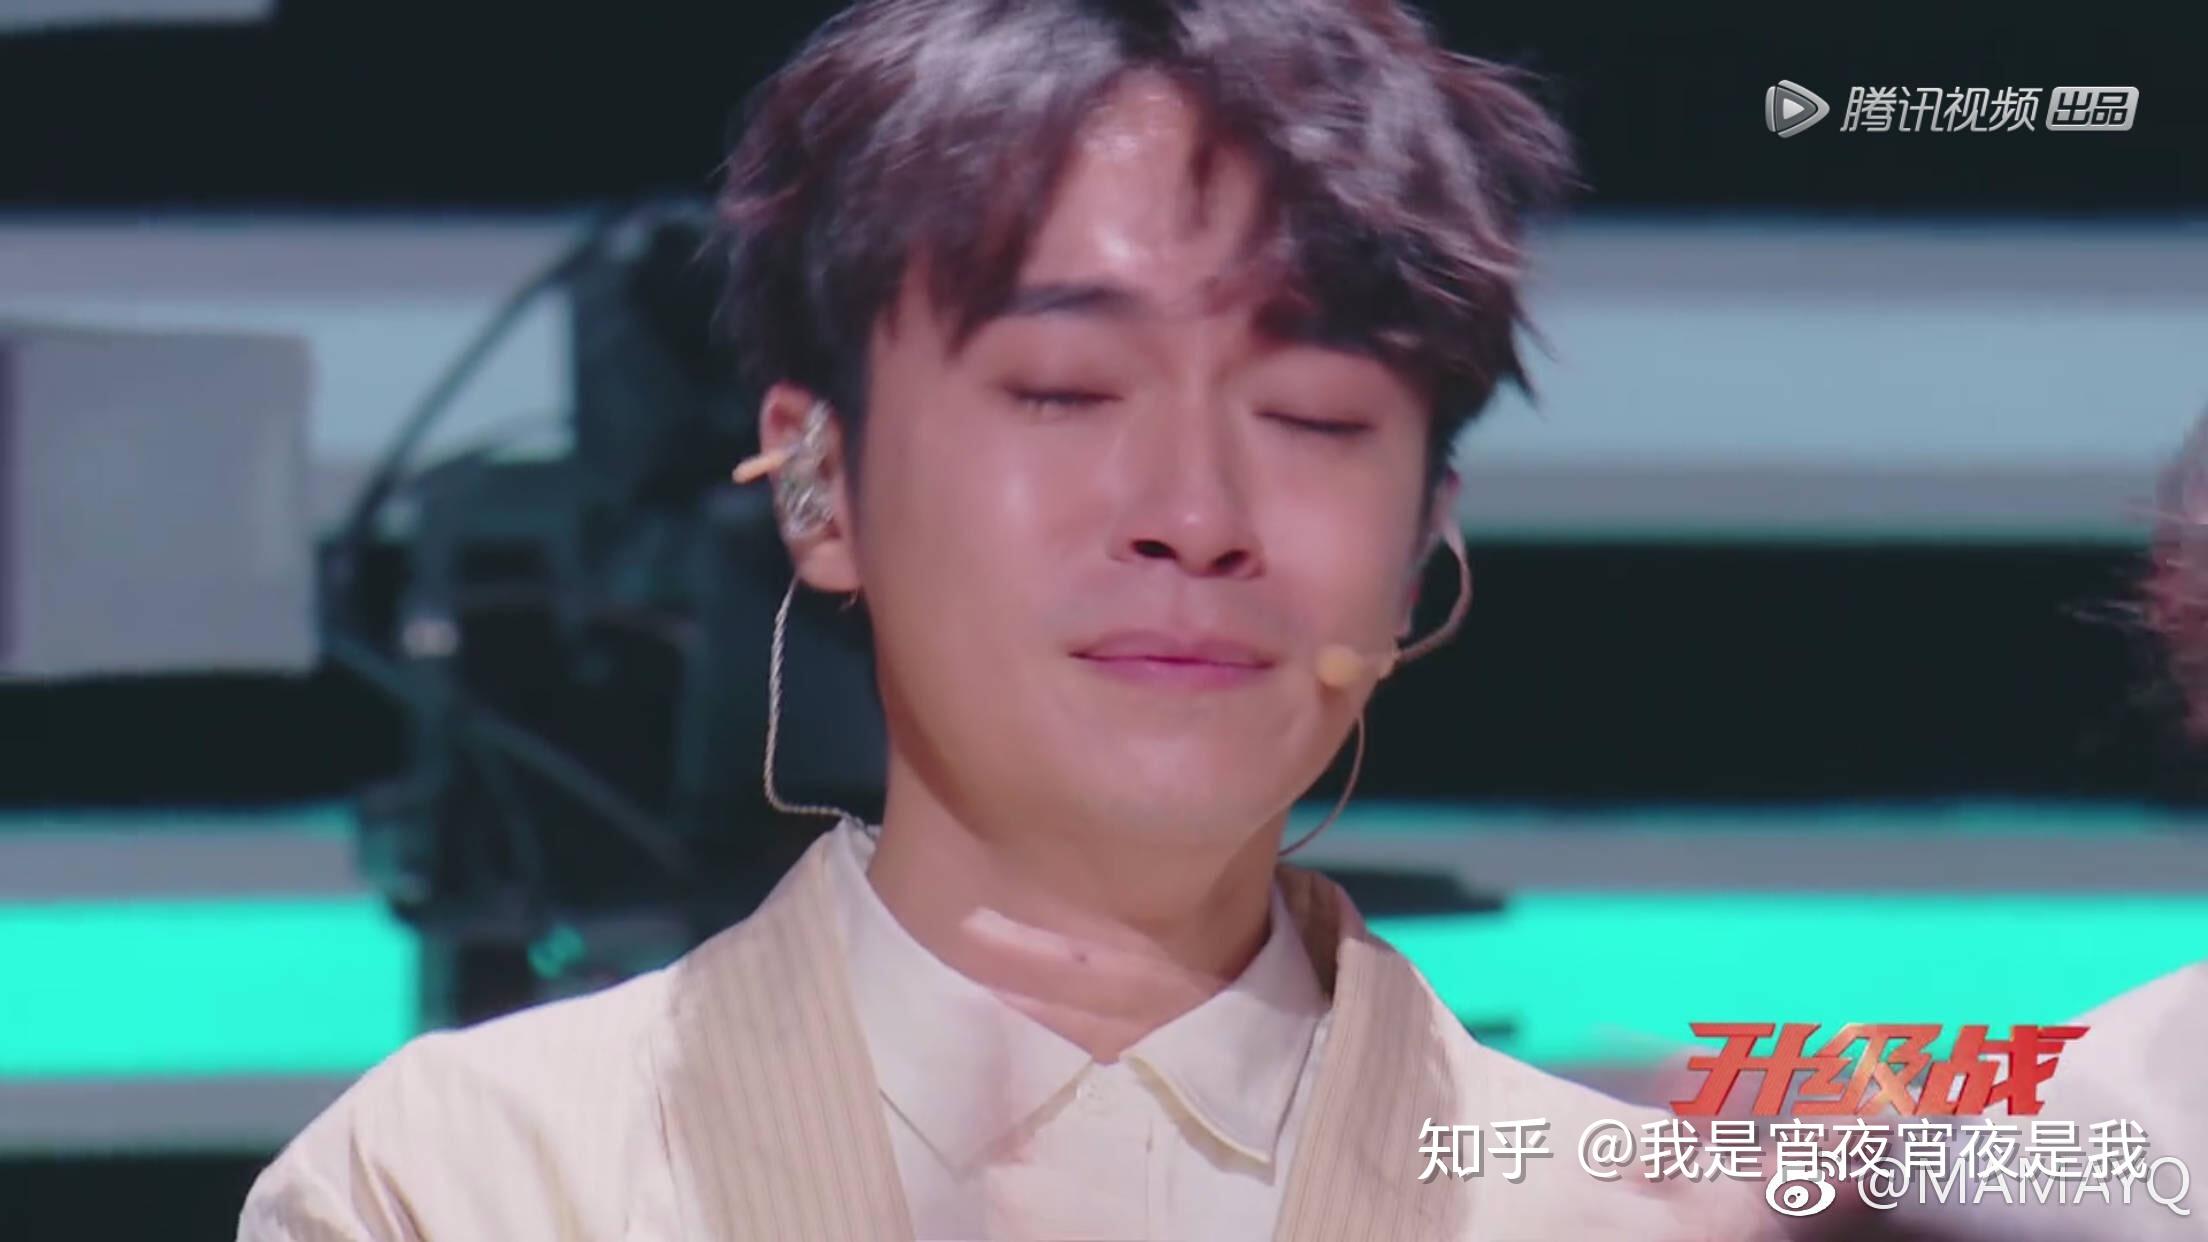 如何看待《明日之子》第二季第四期吴青峰「哭了」并自责名气不高?